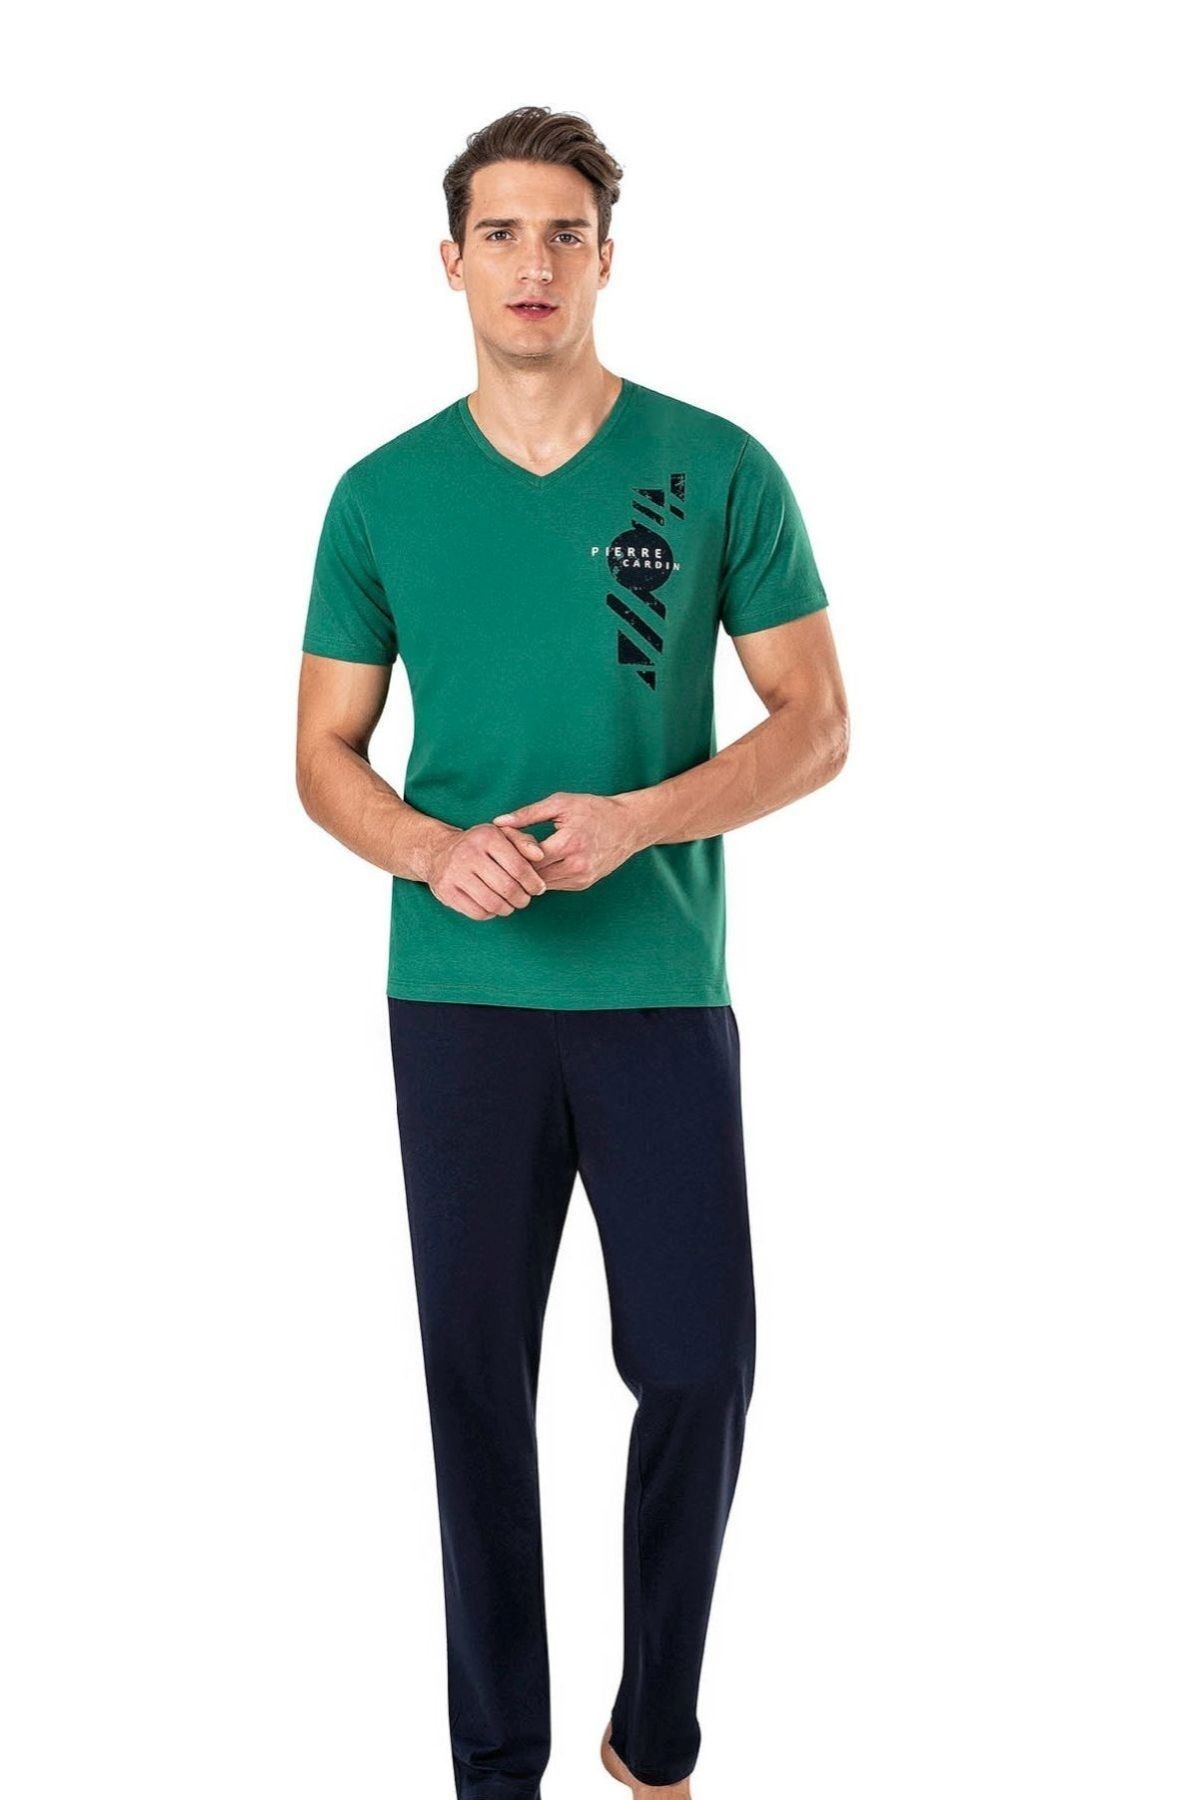 Pierre Cardin 6011 Yeşil Erkek Kısa Kollu Pijama Takımı